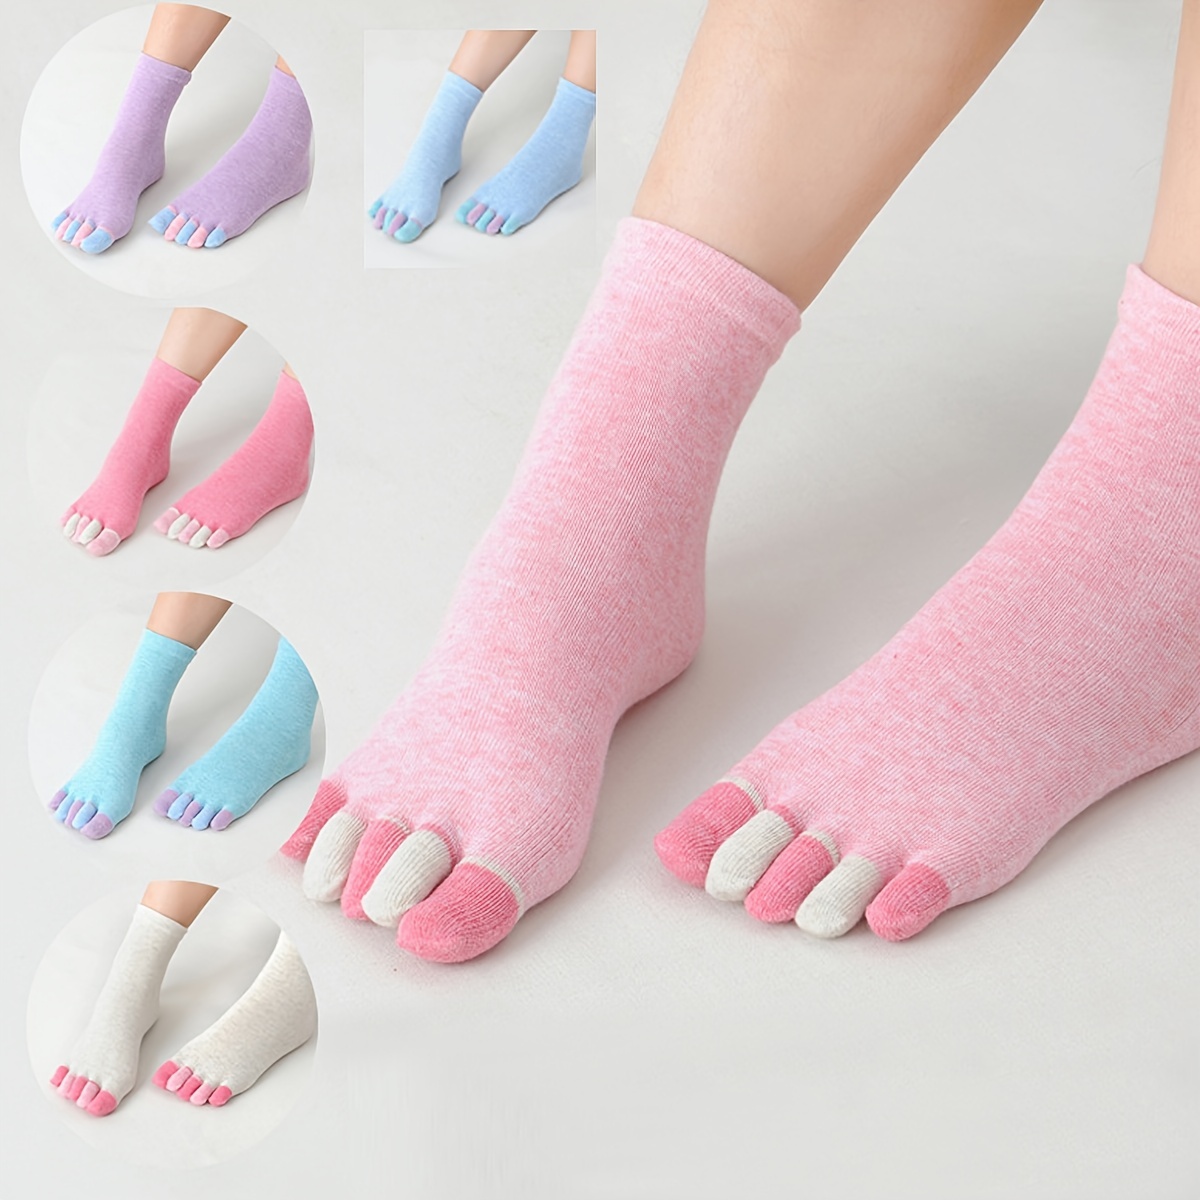  Calcetines para mujer con 5 dedos de algodón que